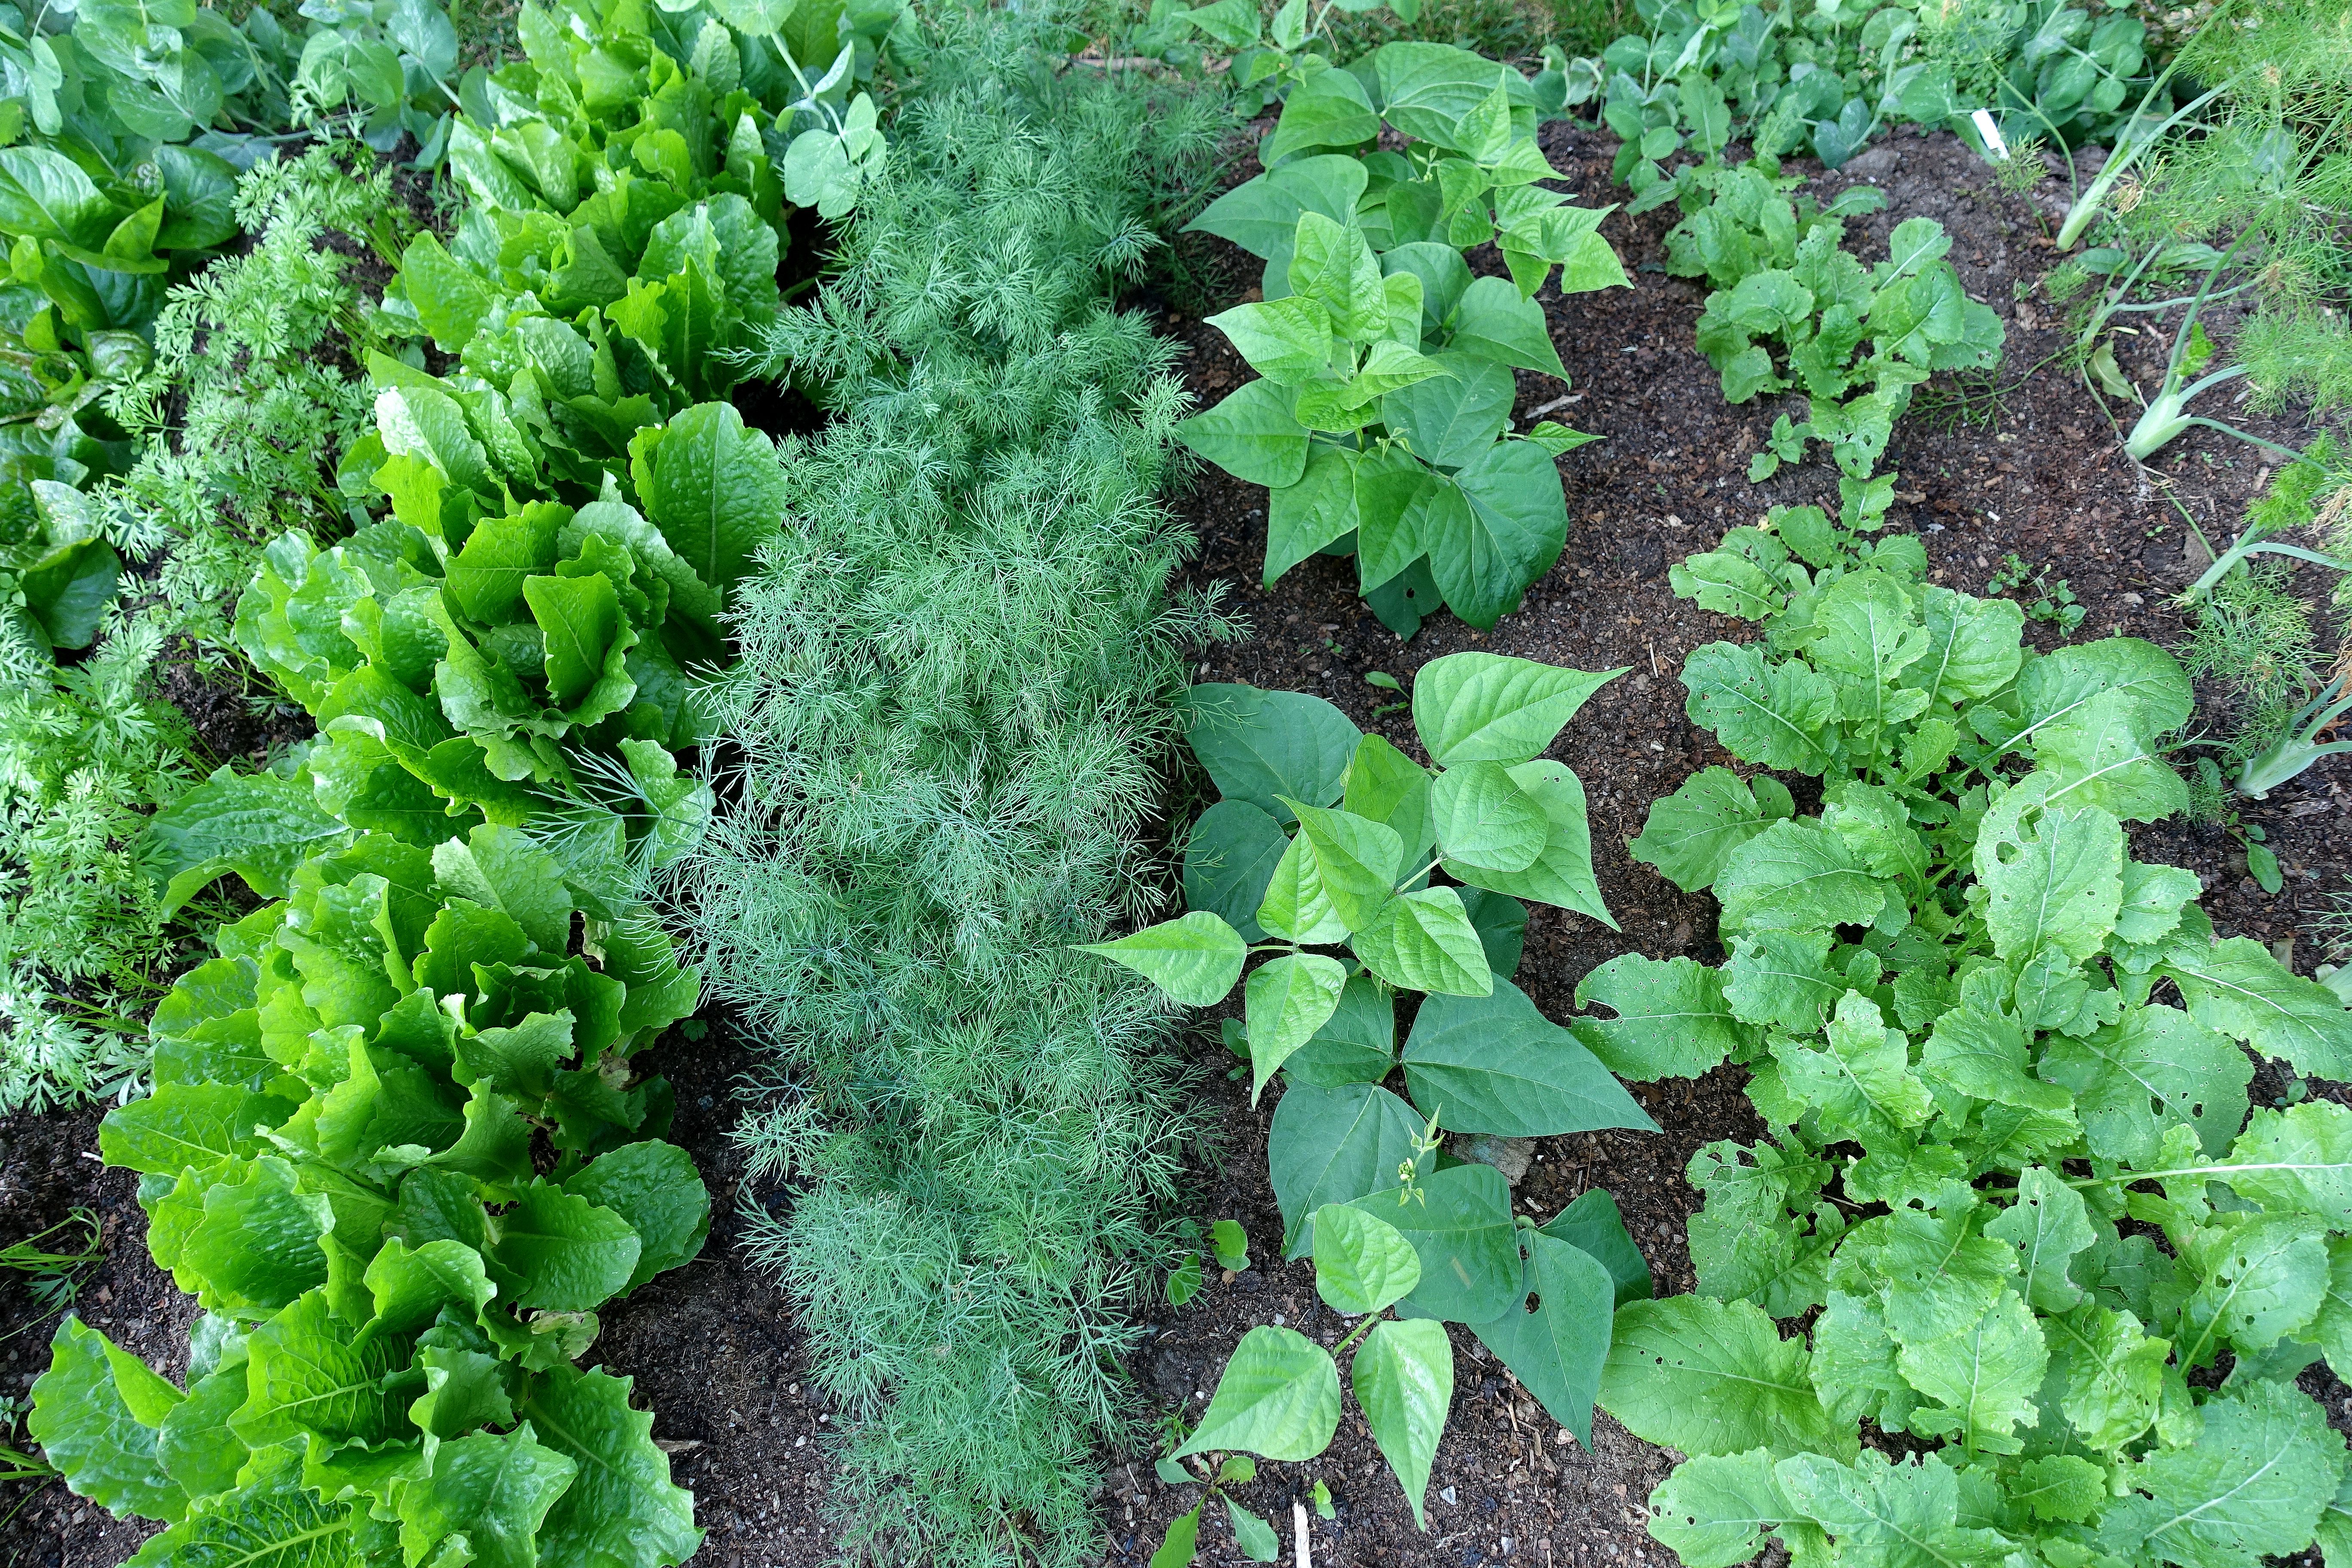 En bild på en odlingsplats med täta rader med bladverk i olika former. Grow in shade, a shady spot with tight rows of leafy greens. 